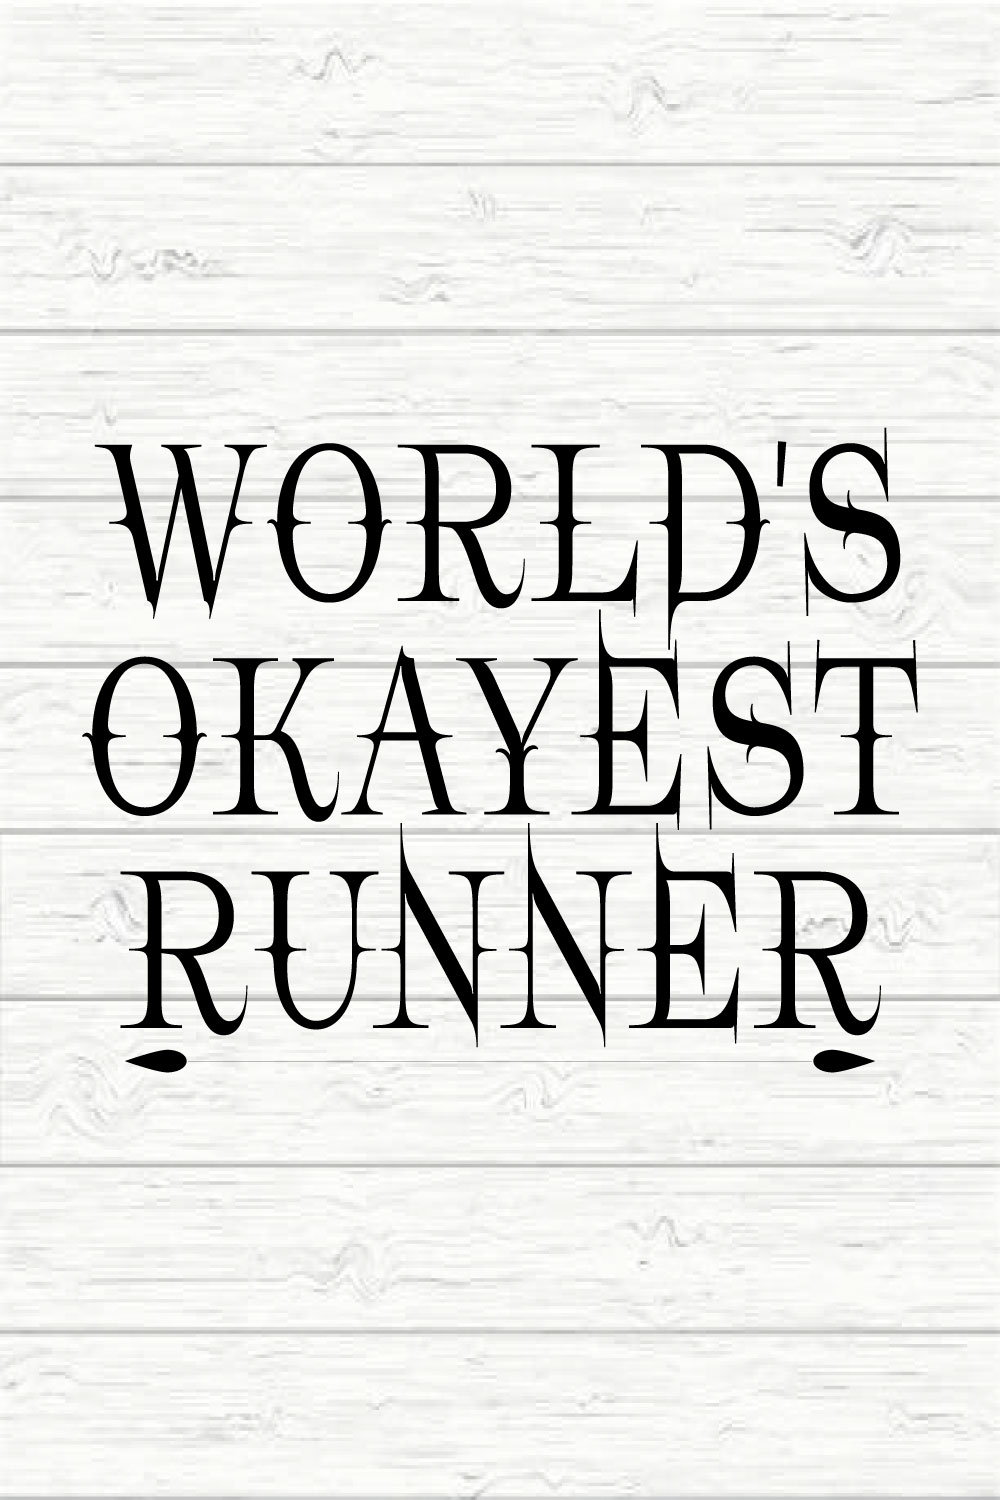 World's Okayest Runner pinterest preview image.